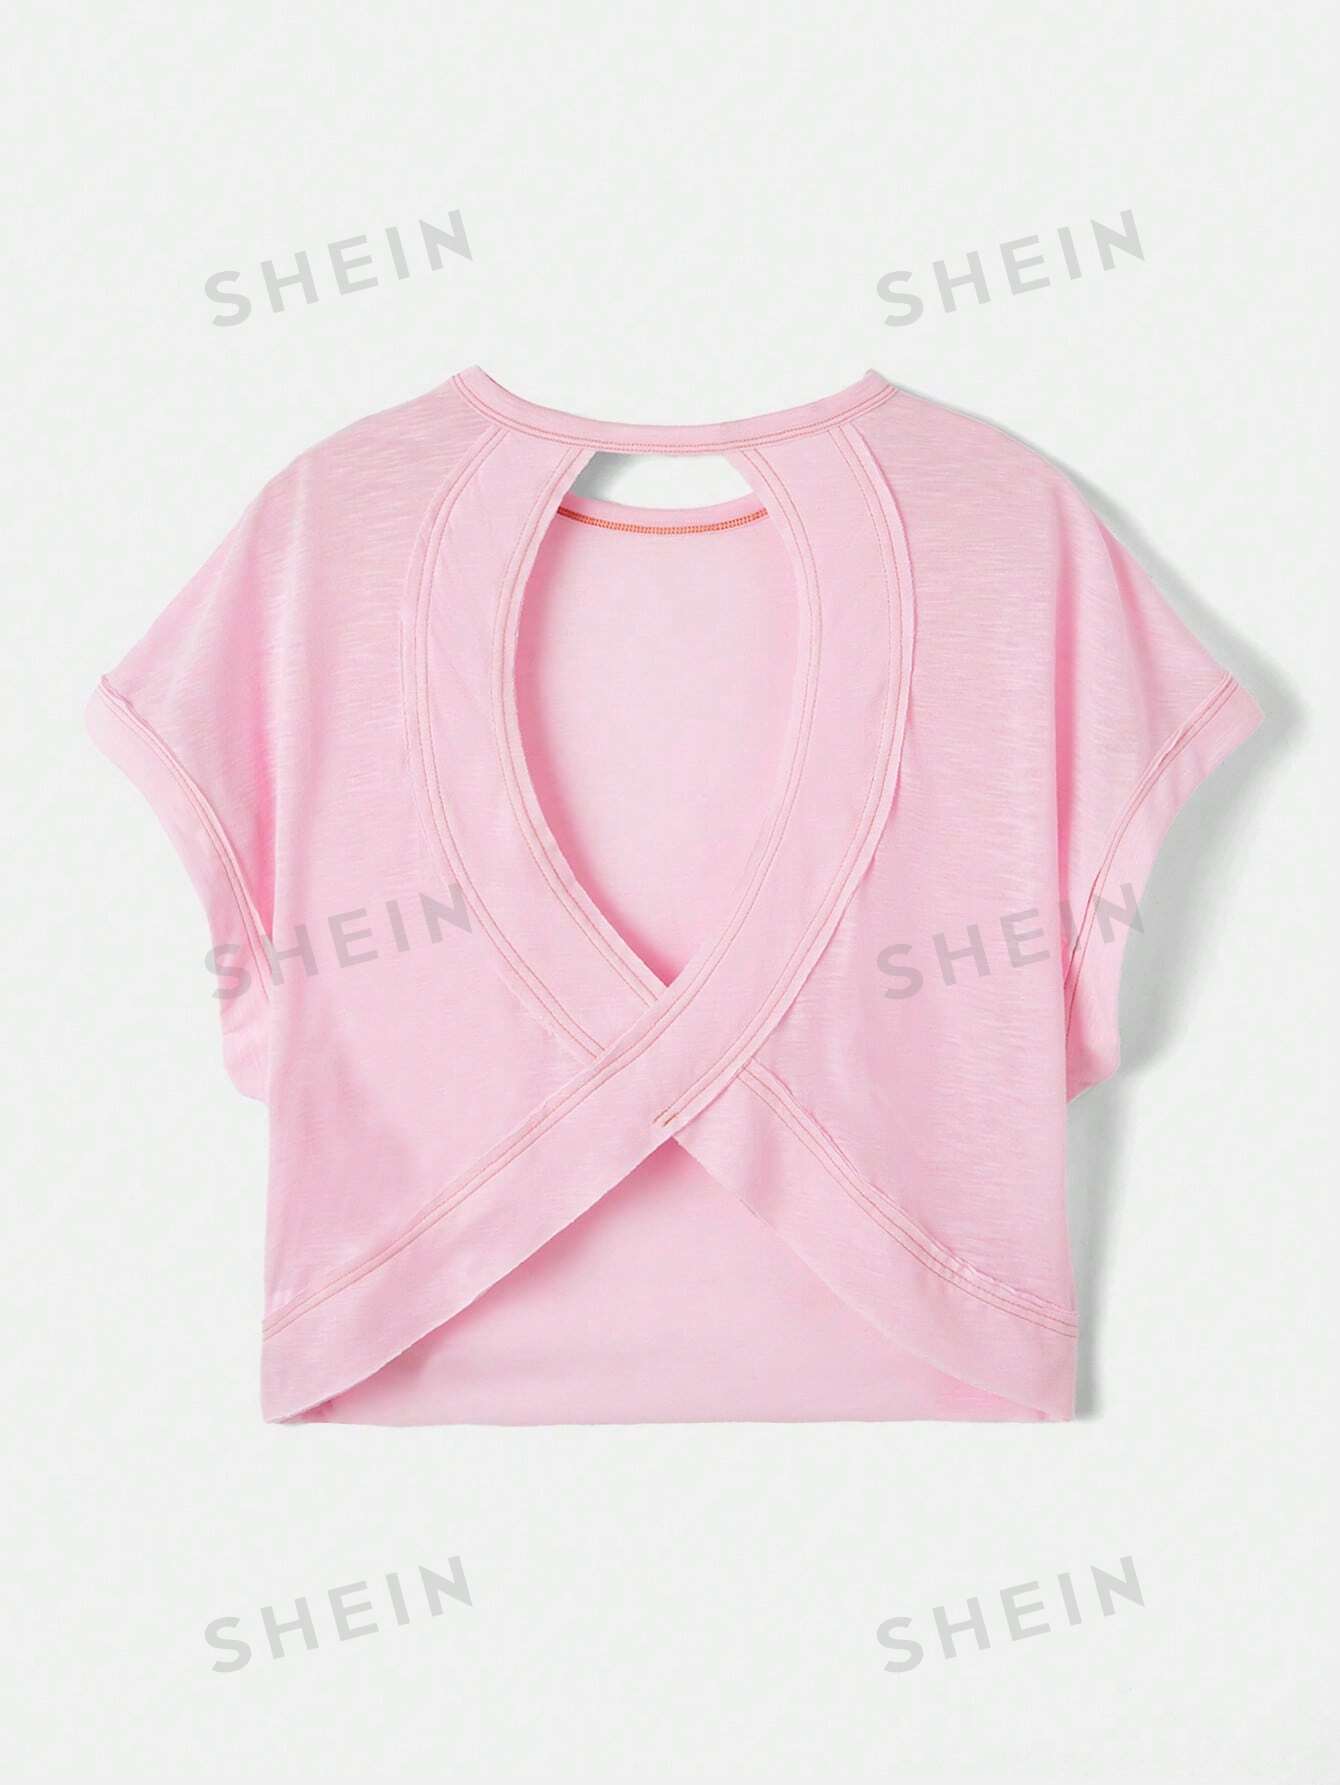 женский свободный свитер с круглым вырезом и рукавом летучая мышь SHEIN Essnce Женская однотонная футболка с рукавами «летучая мышь» и открытой спиной, детский розовый